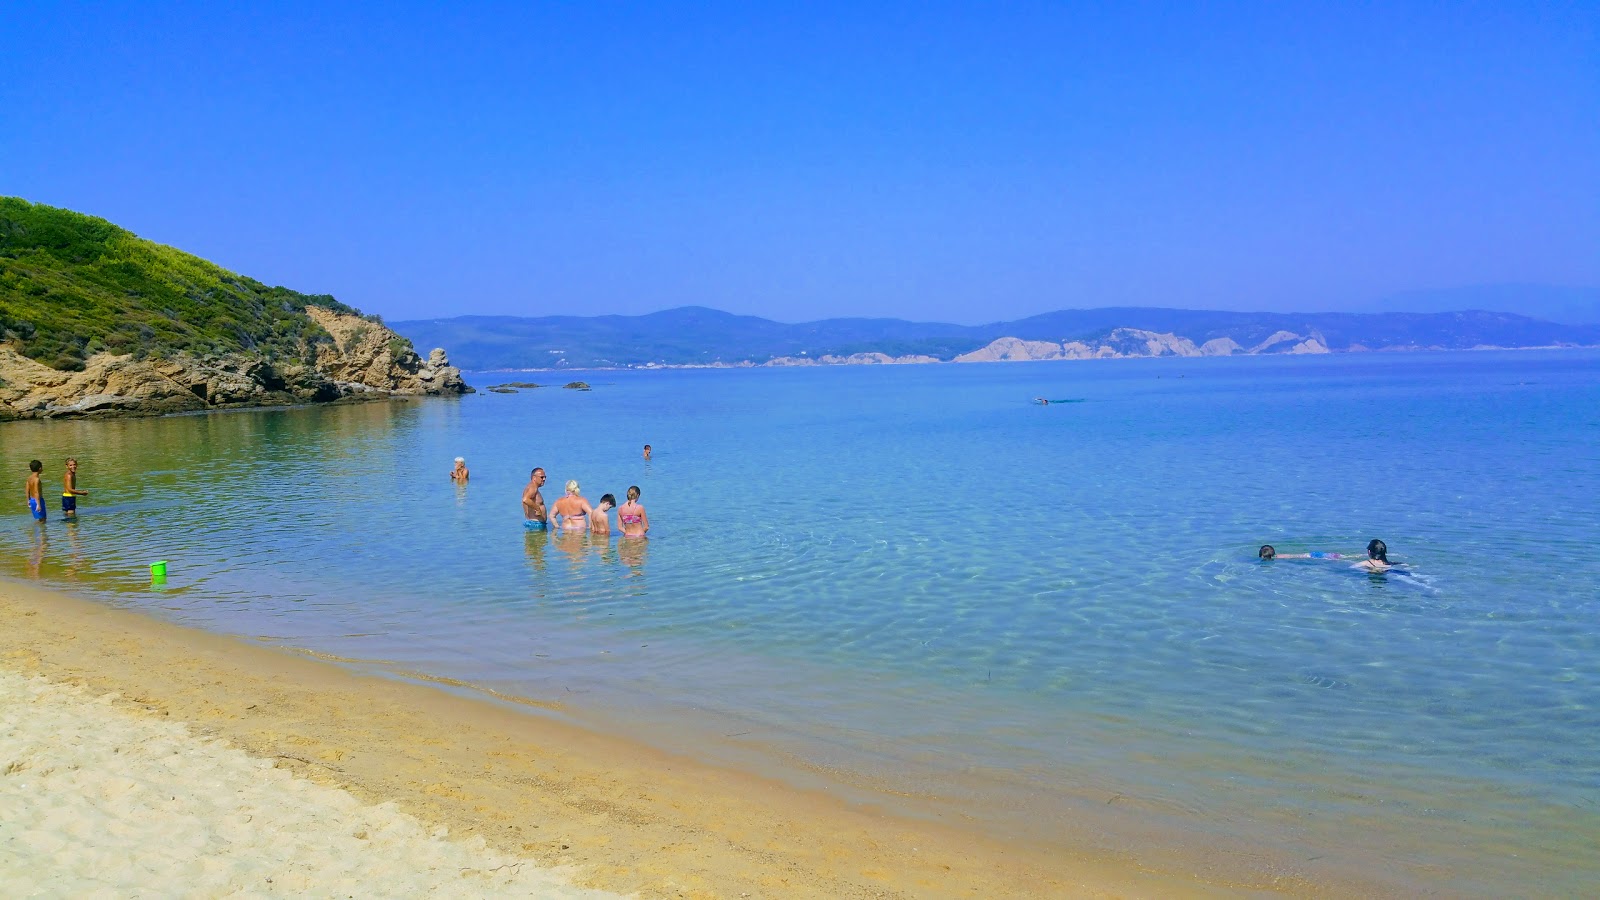 Fotografie cu Mandraki beach - locul popular printre cunoscătorii de relaxare